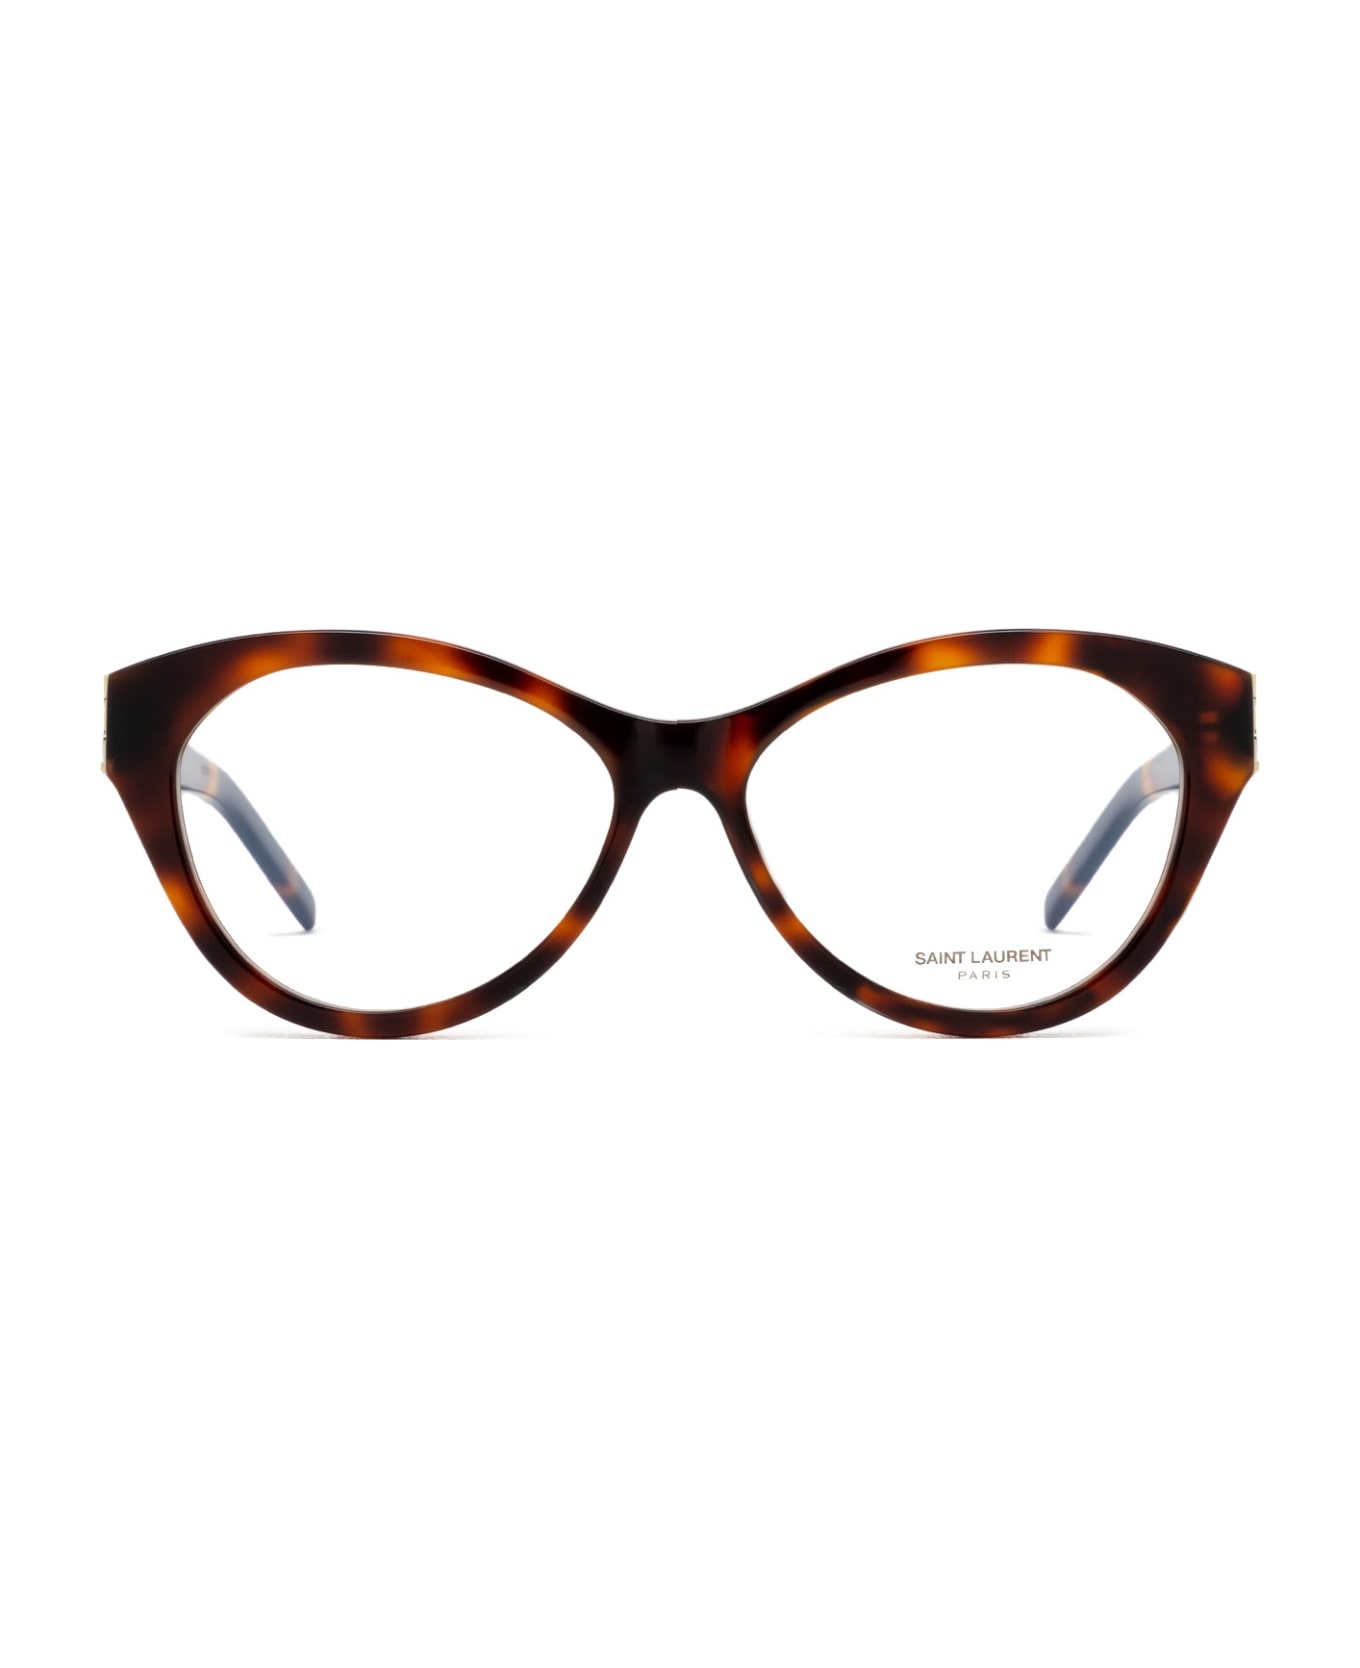 Saint Laurent Eyewear Sl M96 Havana Glasses - Havana アイウェア